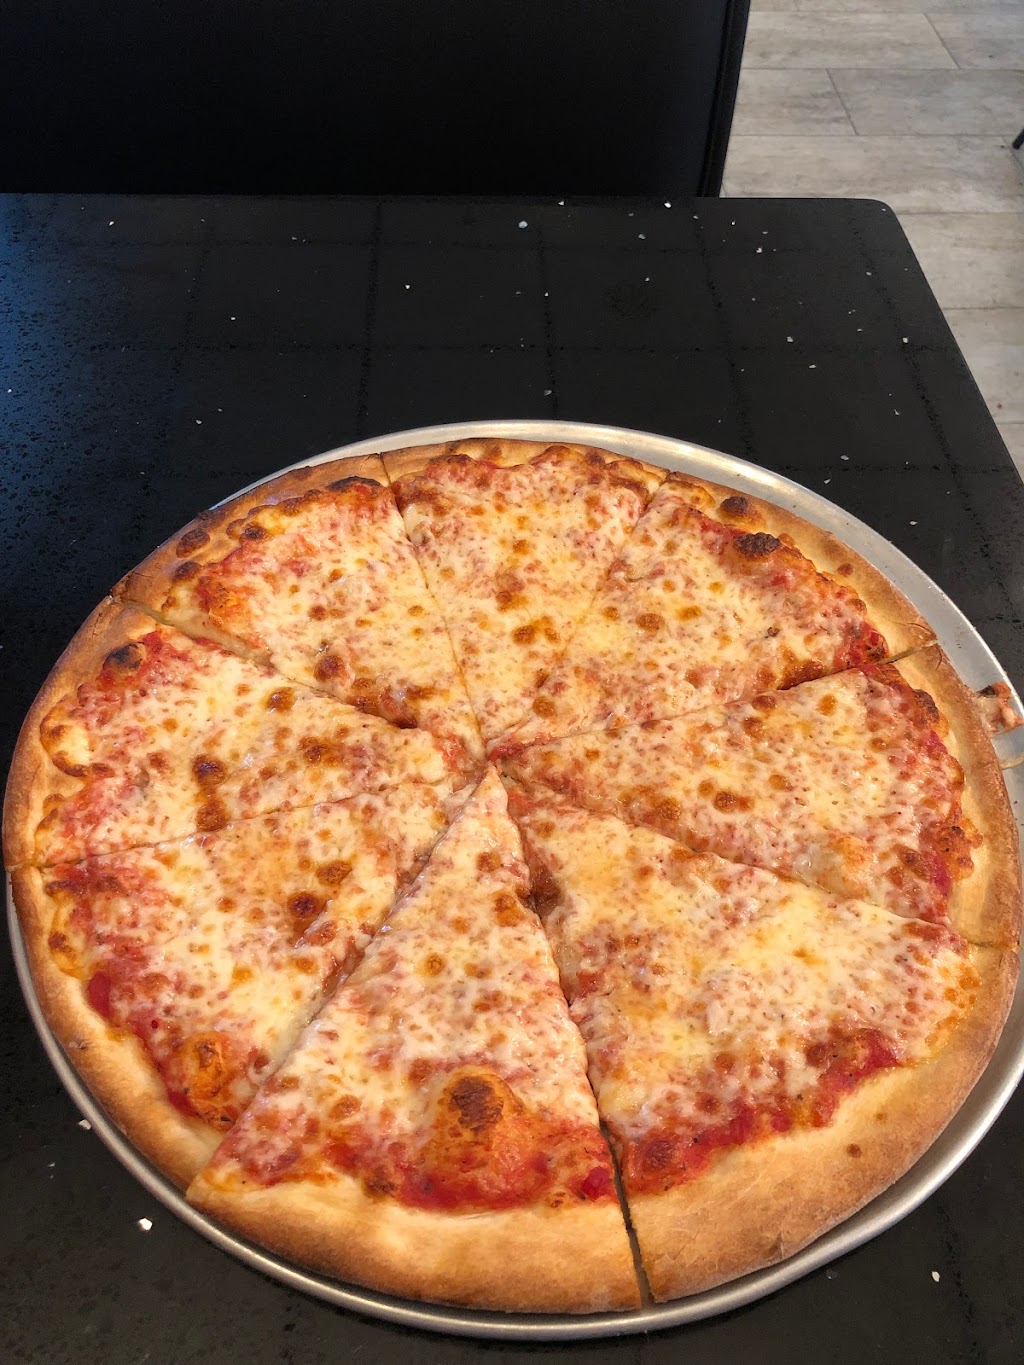 I Love NY Pizza | 980 Birmingham Rd, Alpharetta, GA 30004, USA | Phone: (770) 442-9699